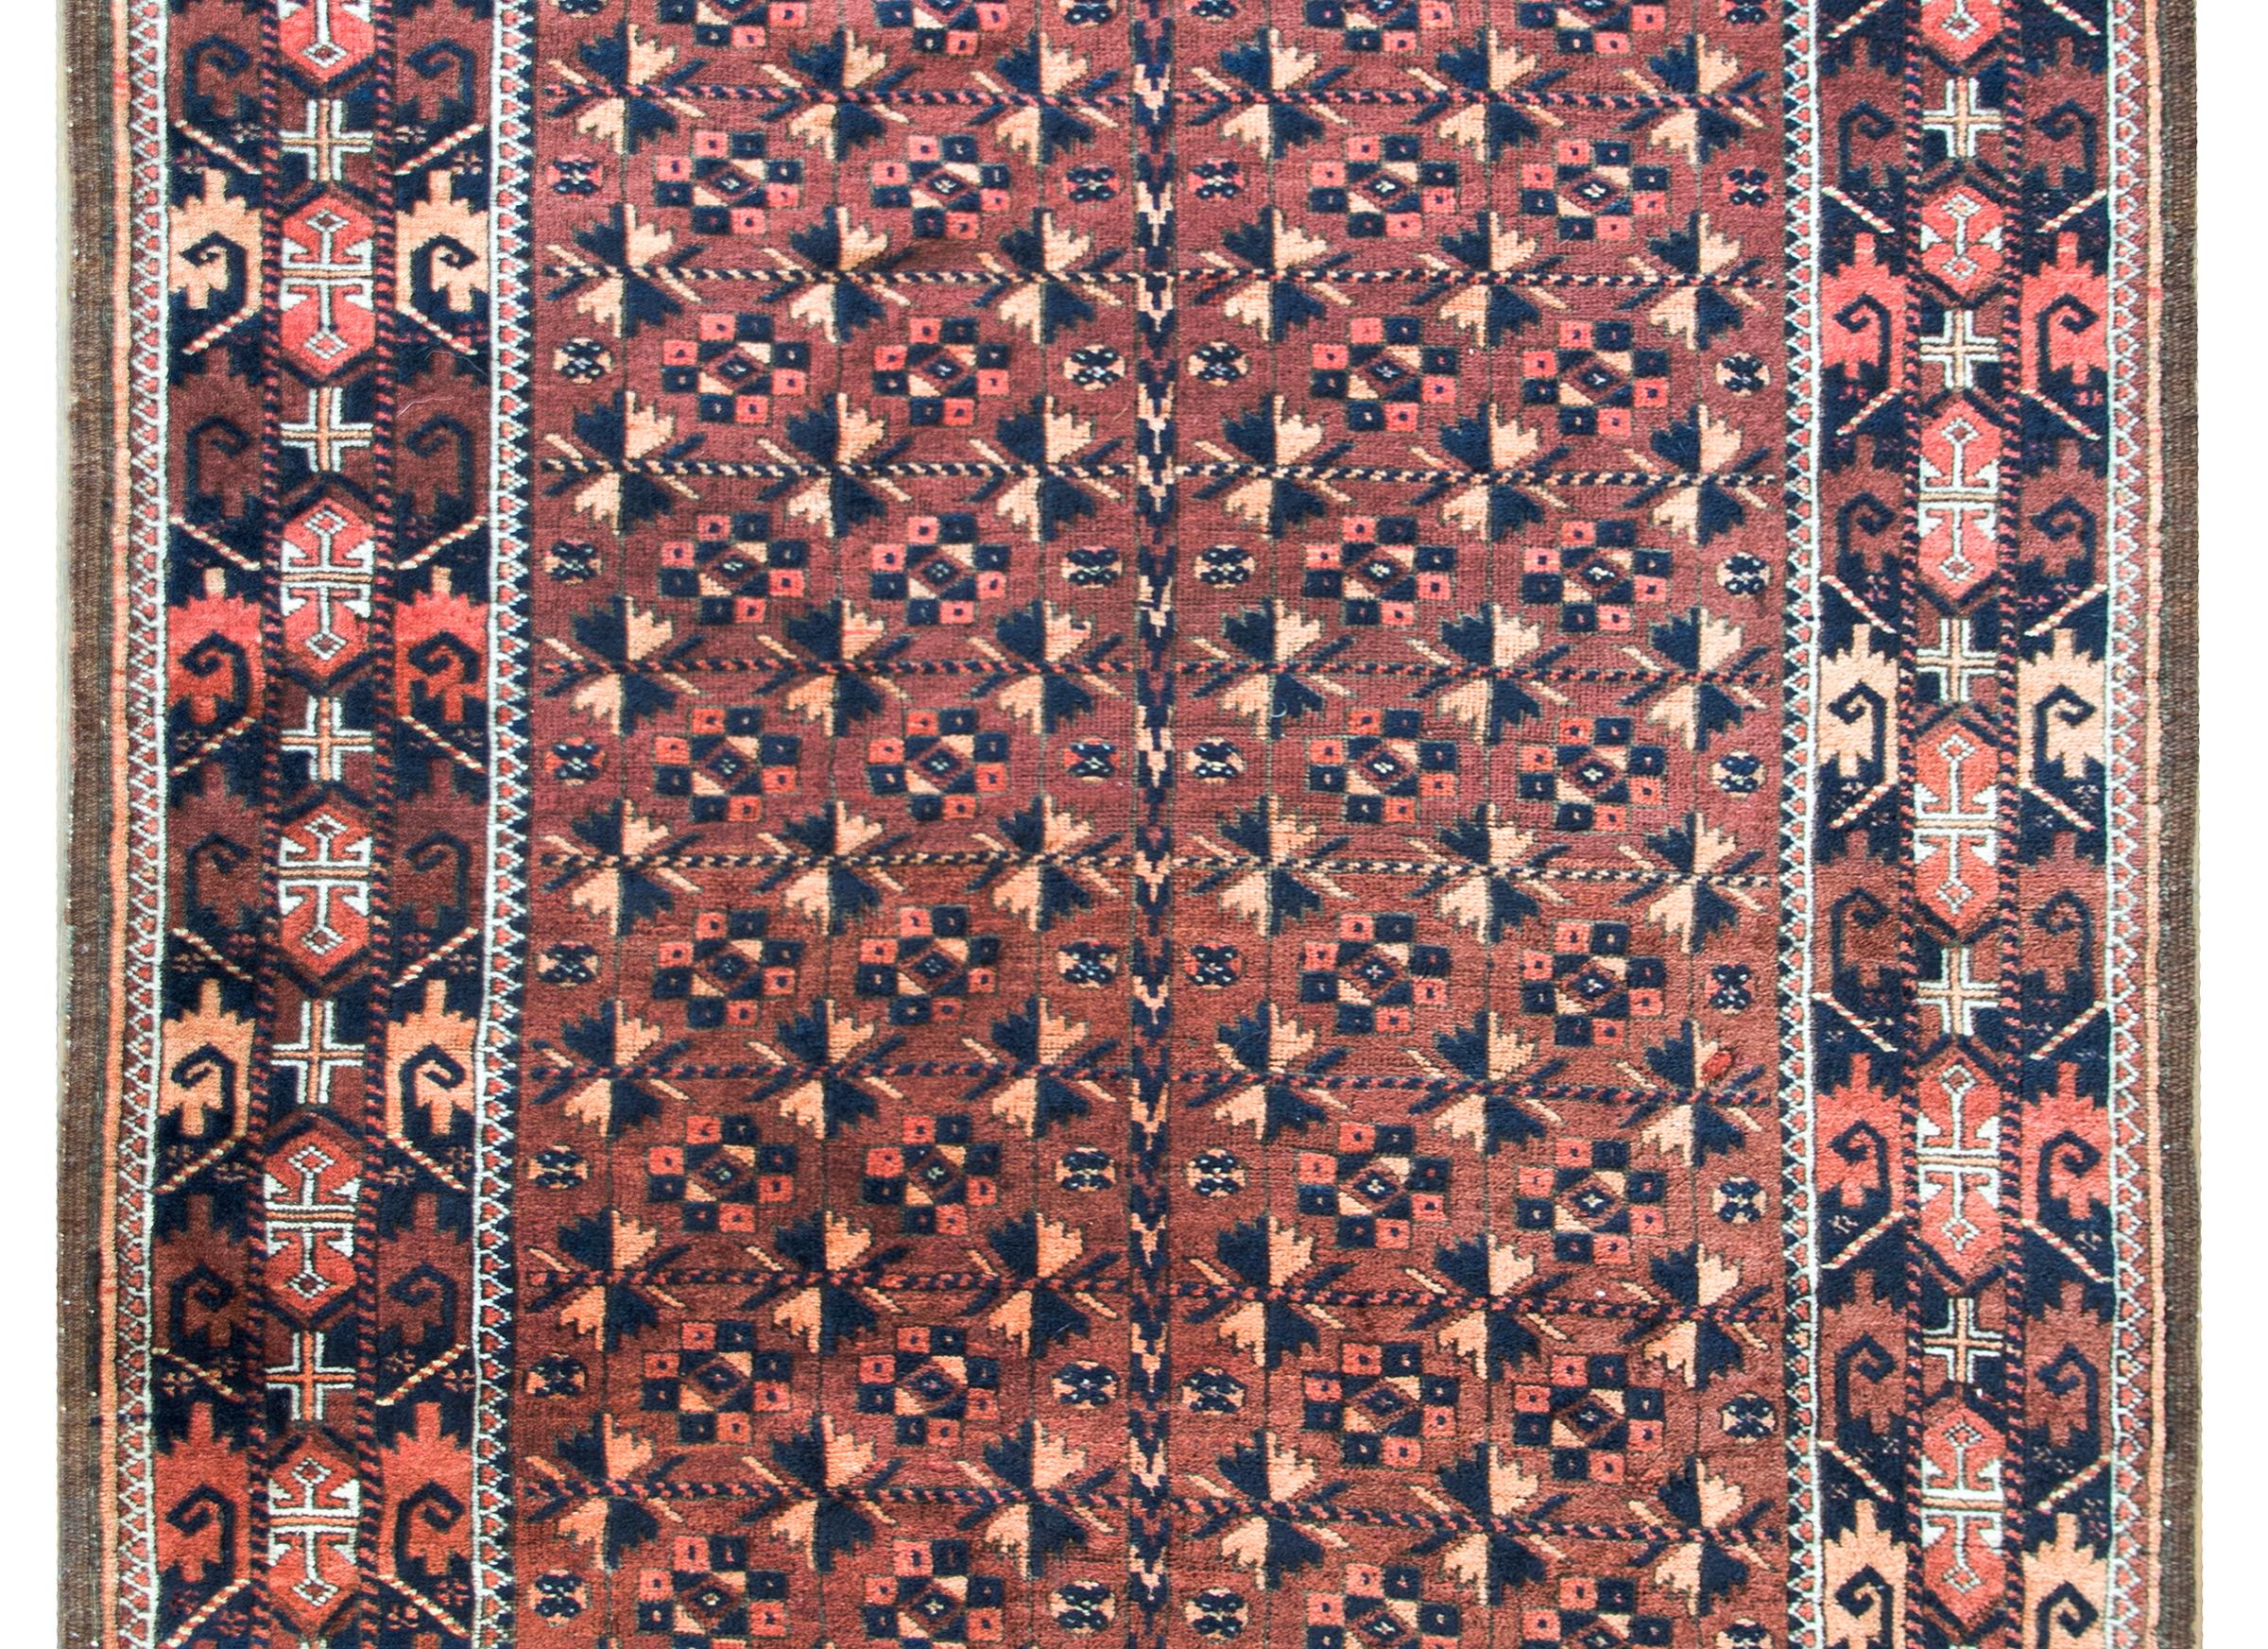 Magnifique tapis persan Baloutche du début du 20e siècle, avec un motif floral stylisé tissé en laine rouge, orange et noire, sur un fond brun.  La bordure est magnifique, avec des fleurs et des feuilles encore plus stylisées, tissées dans des